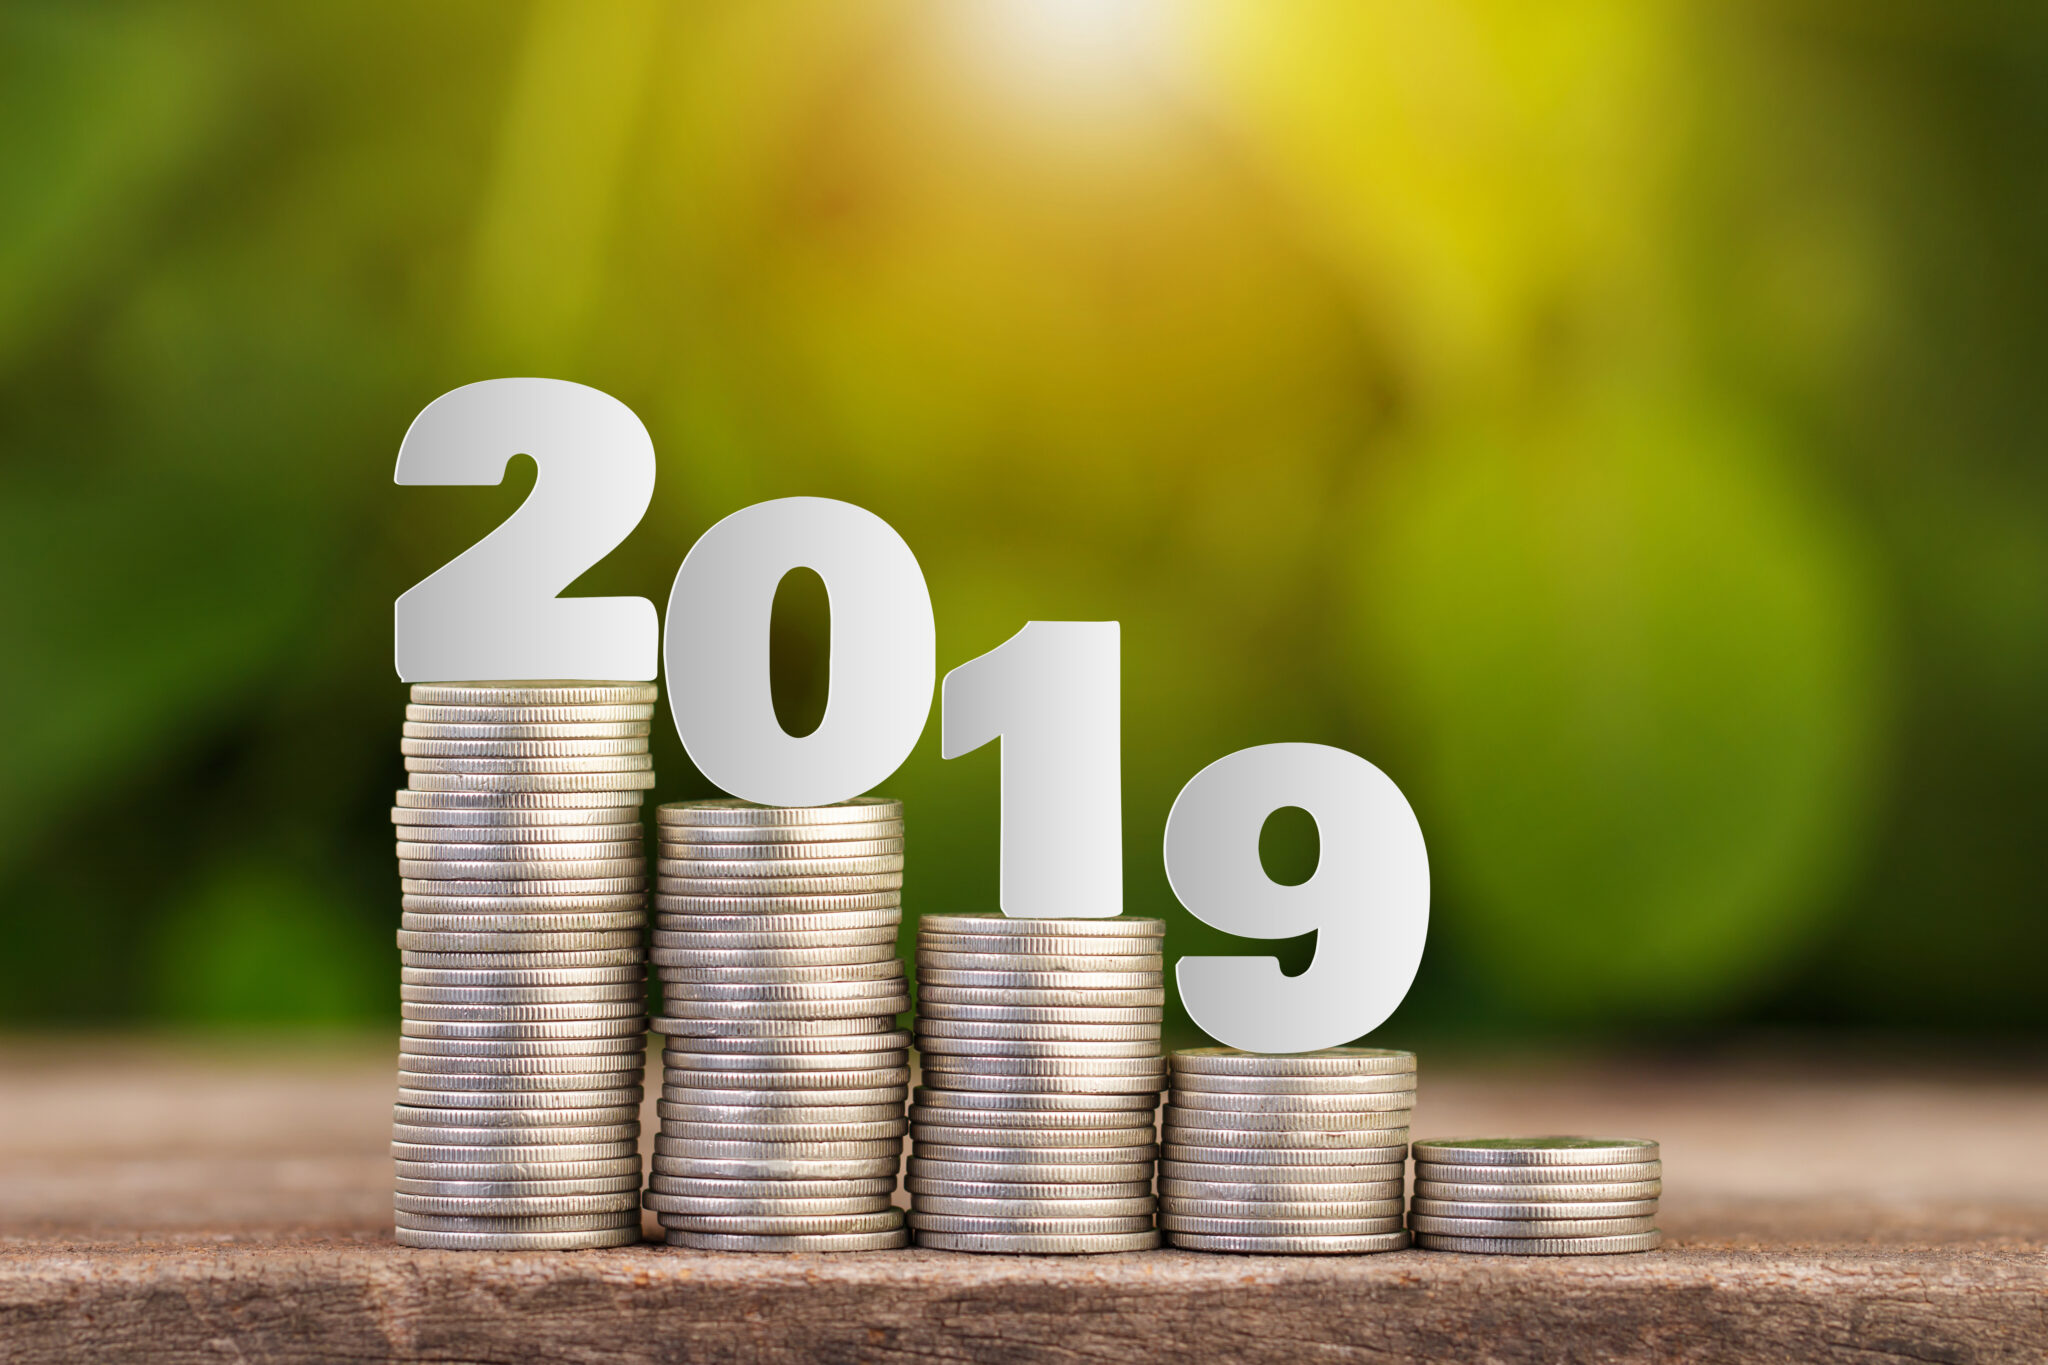 Balance Fondos de Inversión 2019: récord histórico de rentabilidad anual